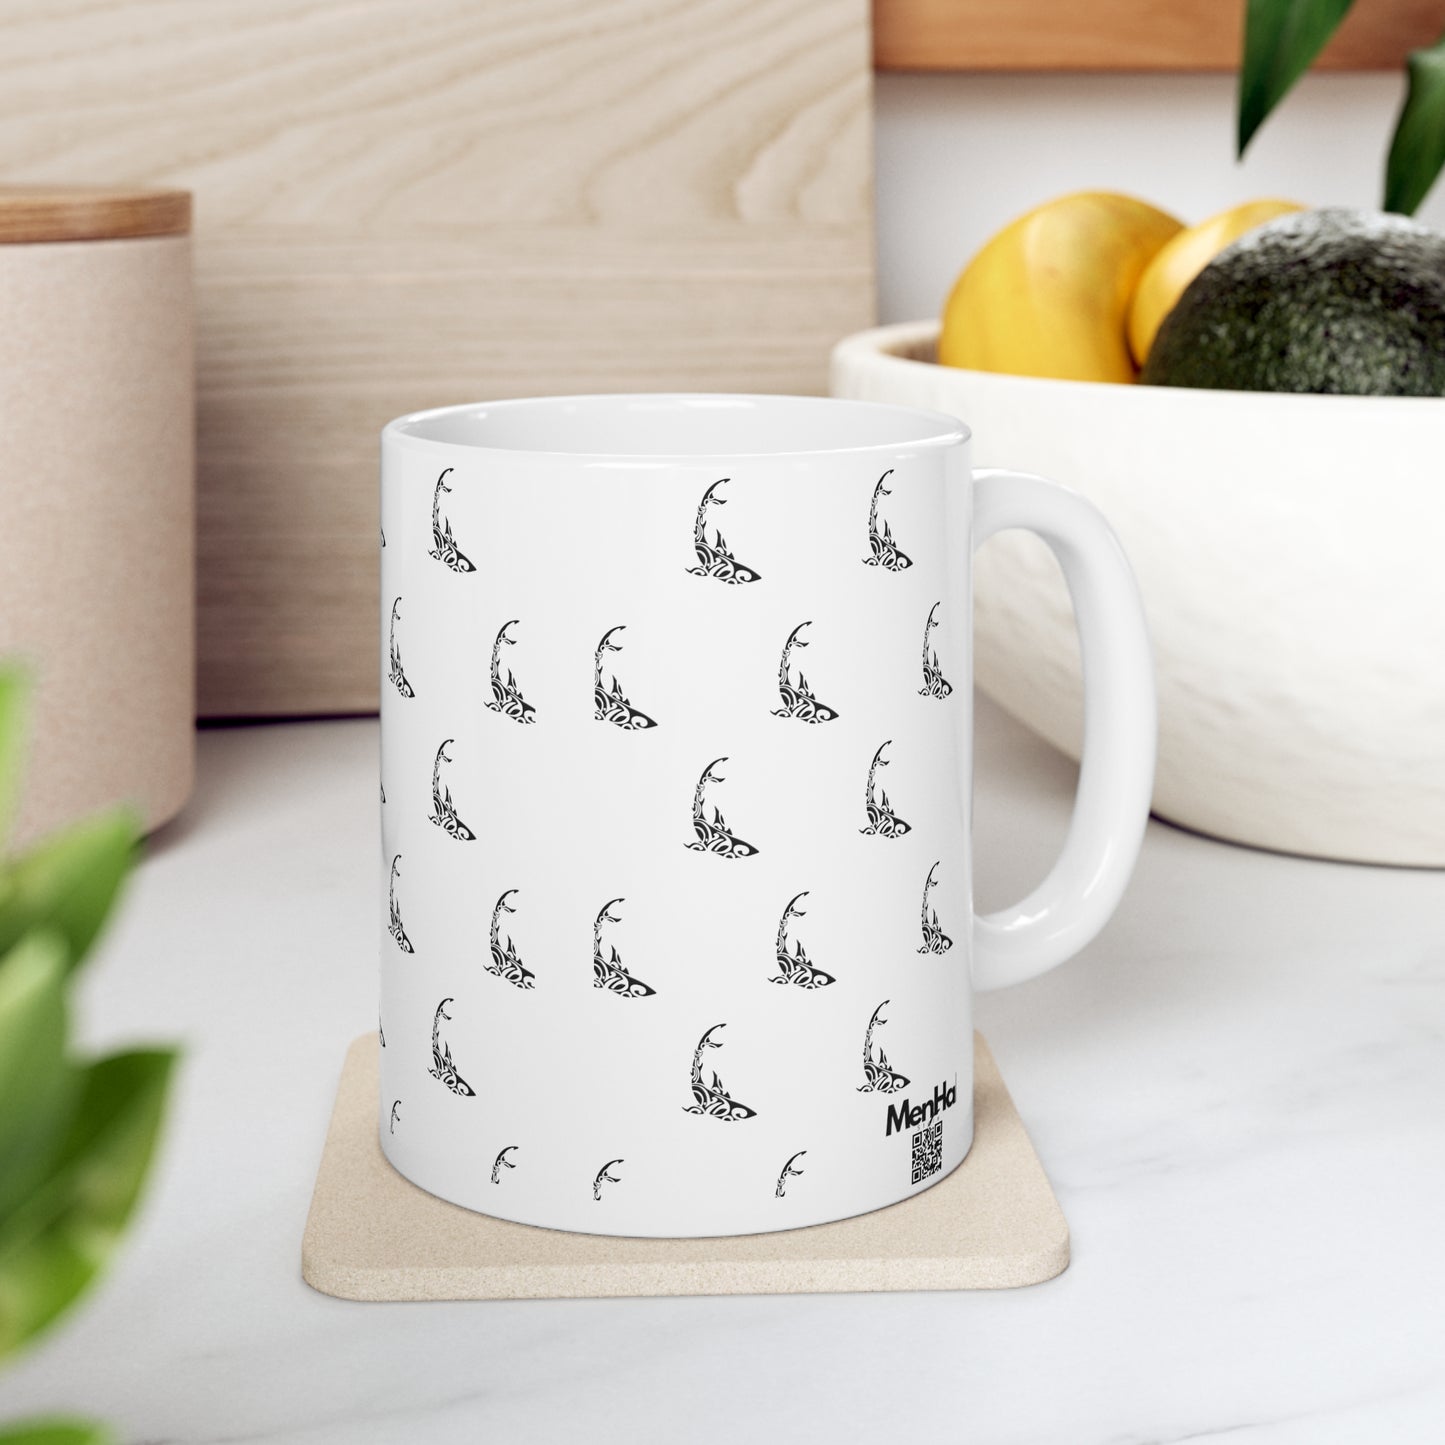 Sharky - Ceramic Mug 11oz